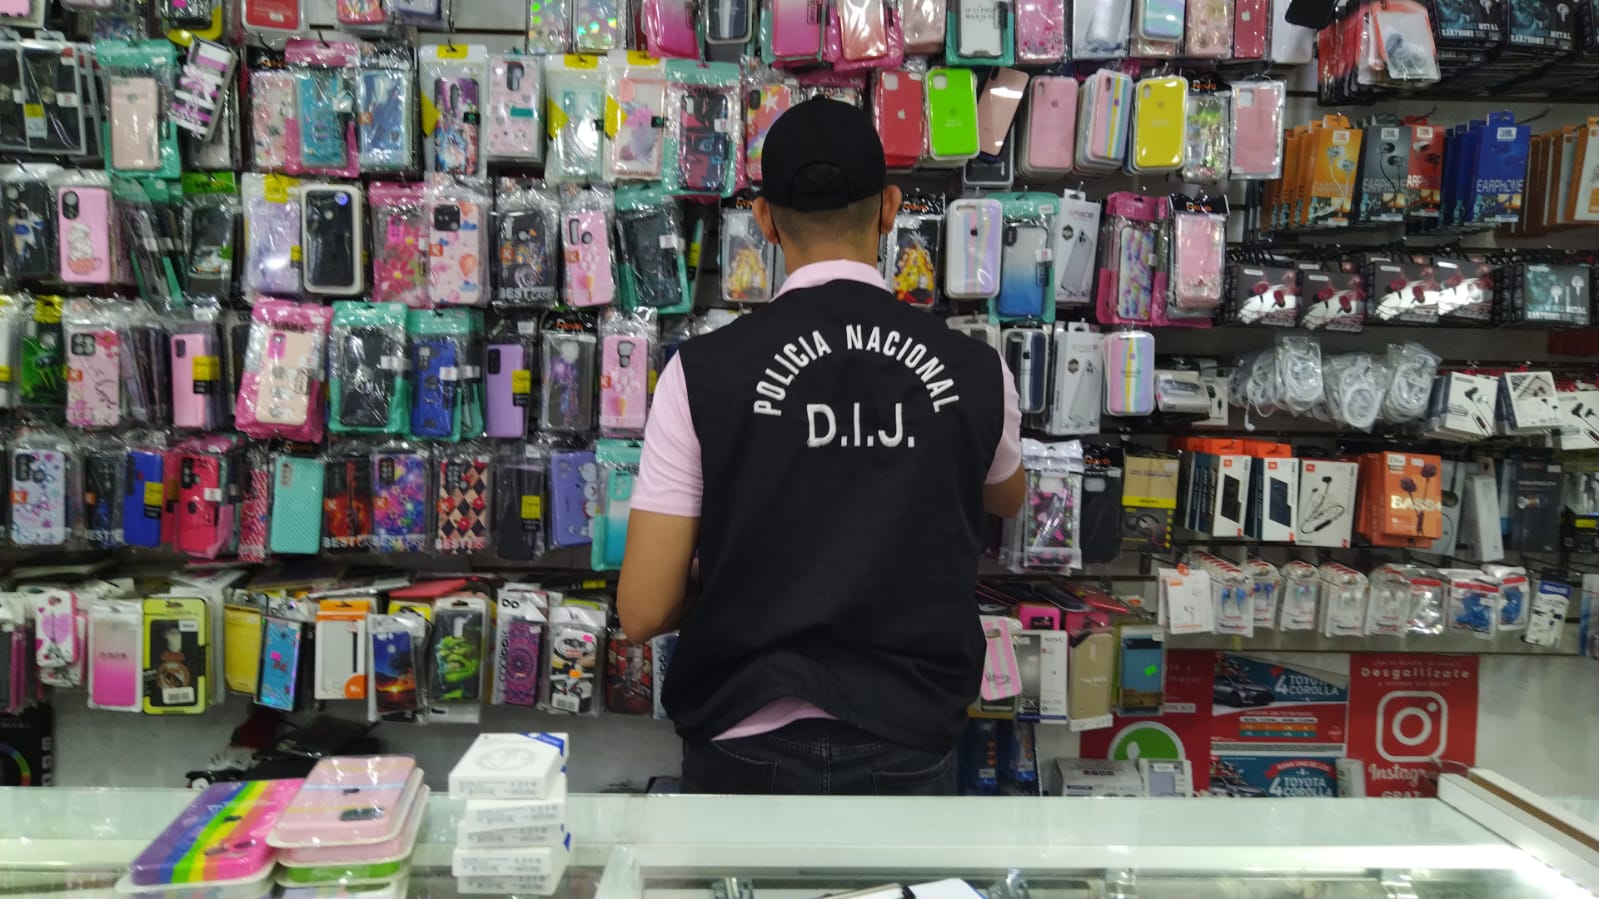 Productos de marcas falsificadas son confiscados por la DIJ